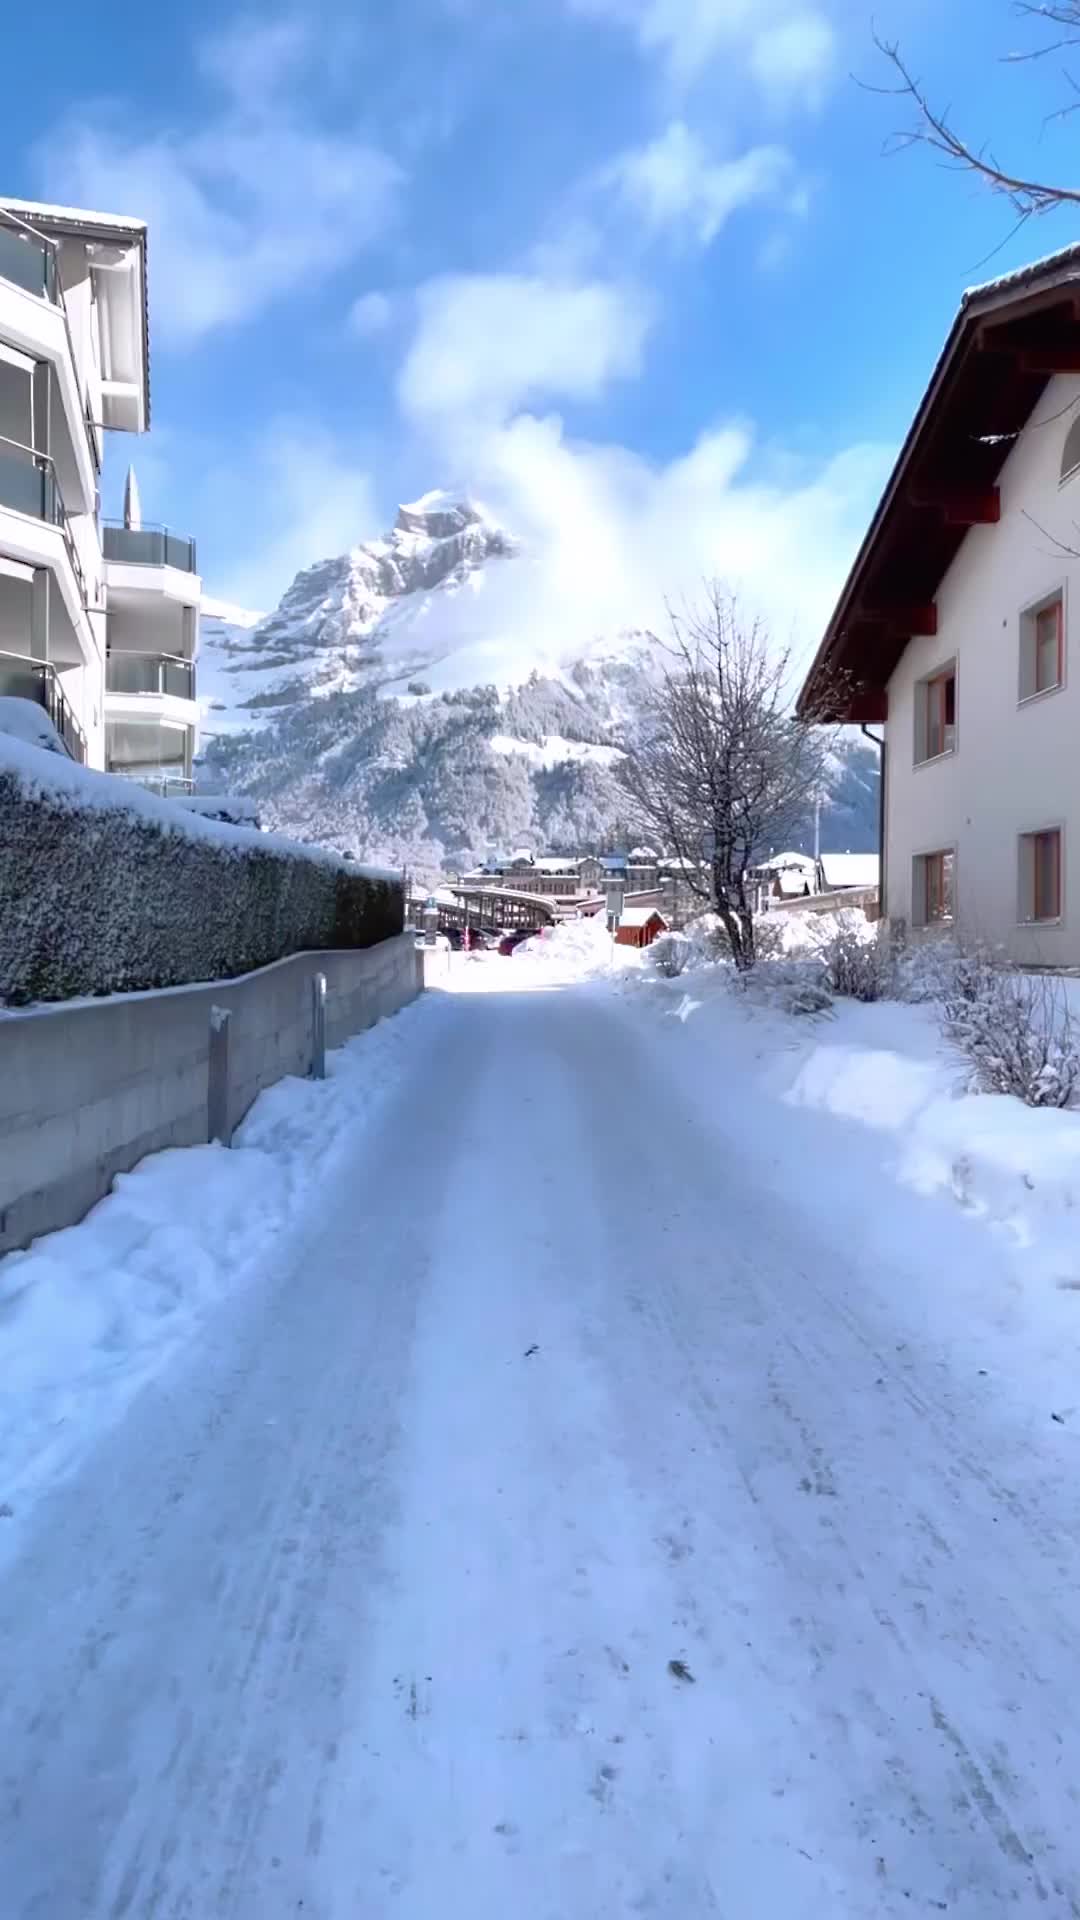 Winter Wonderland in Engelberg: Stunning Views & Cute Car